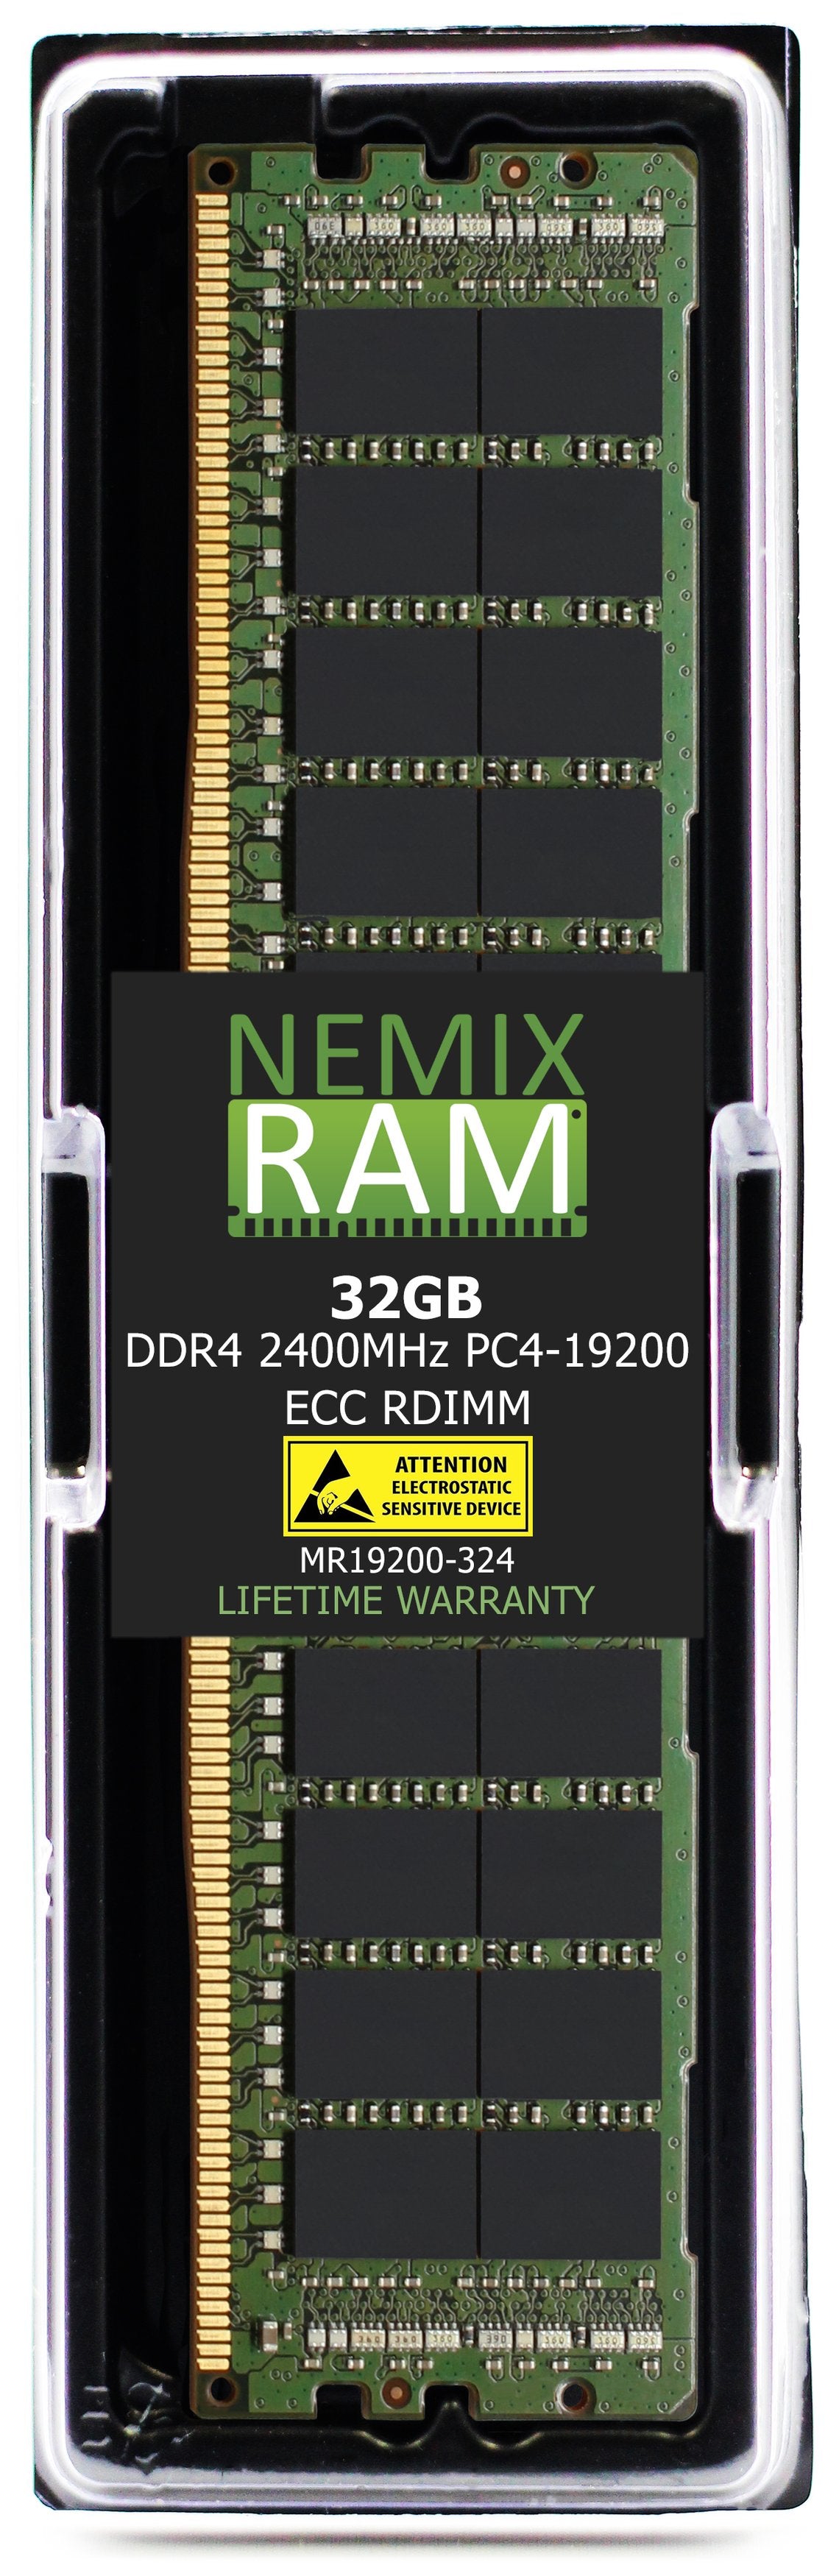 Hynix HMA84GR7MFR4N-UH 32GB DDR4 2400MHZ PC4-19200 RDIMM Compatible Memory Module